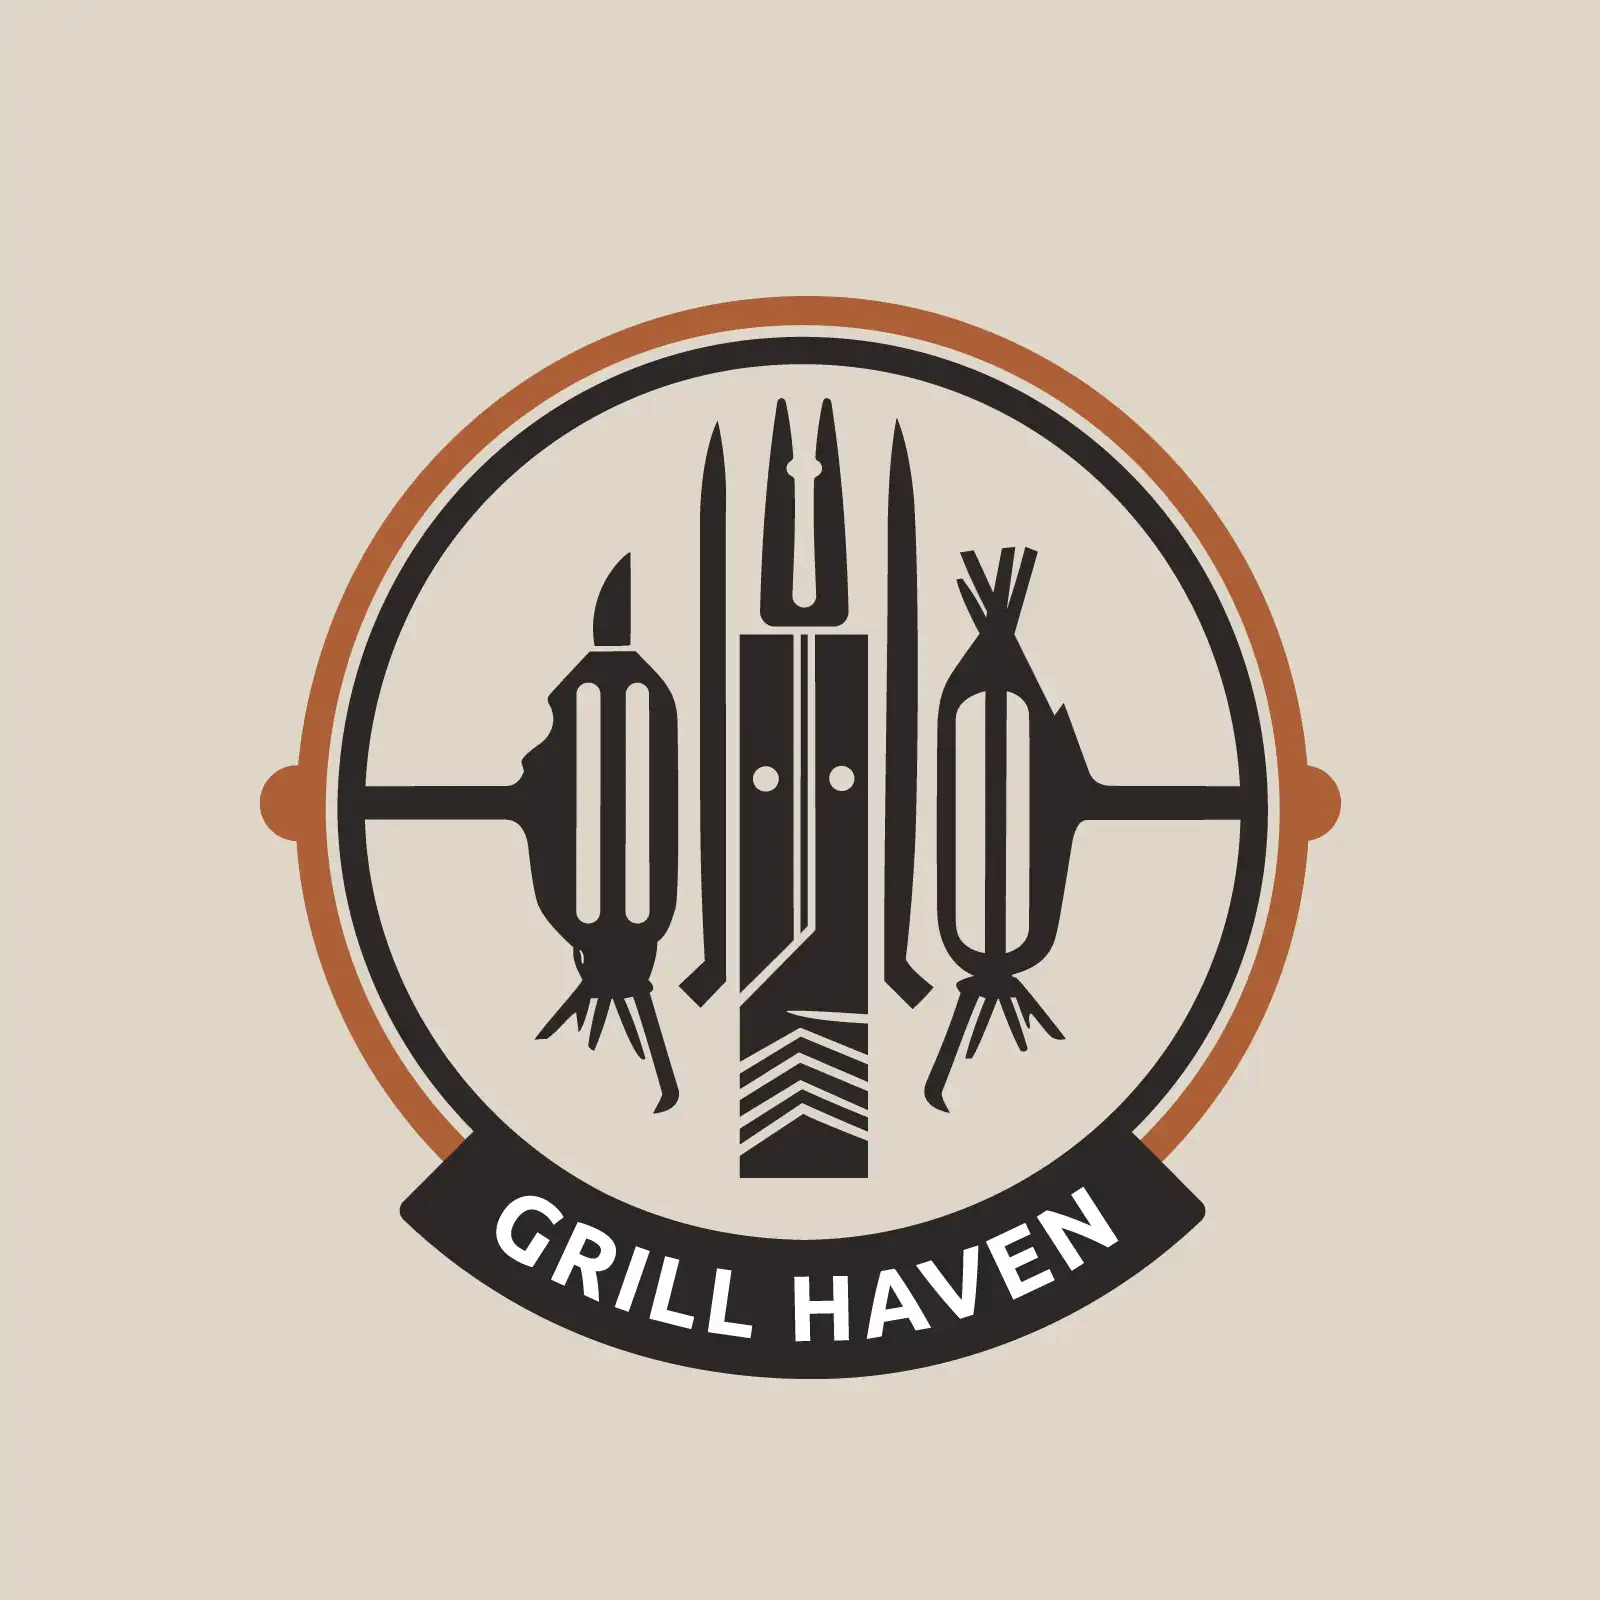 Grill heaven logo